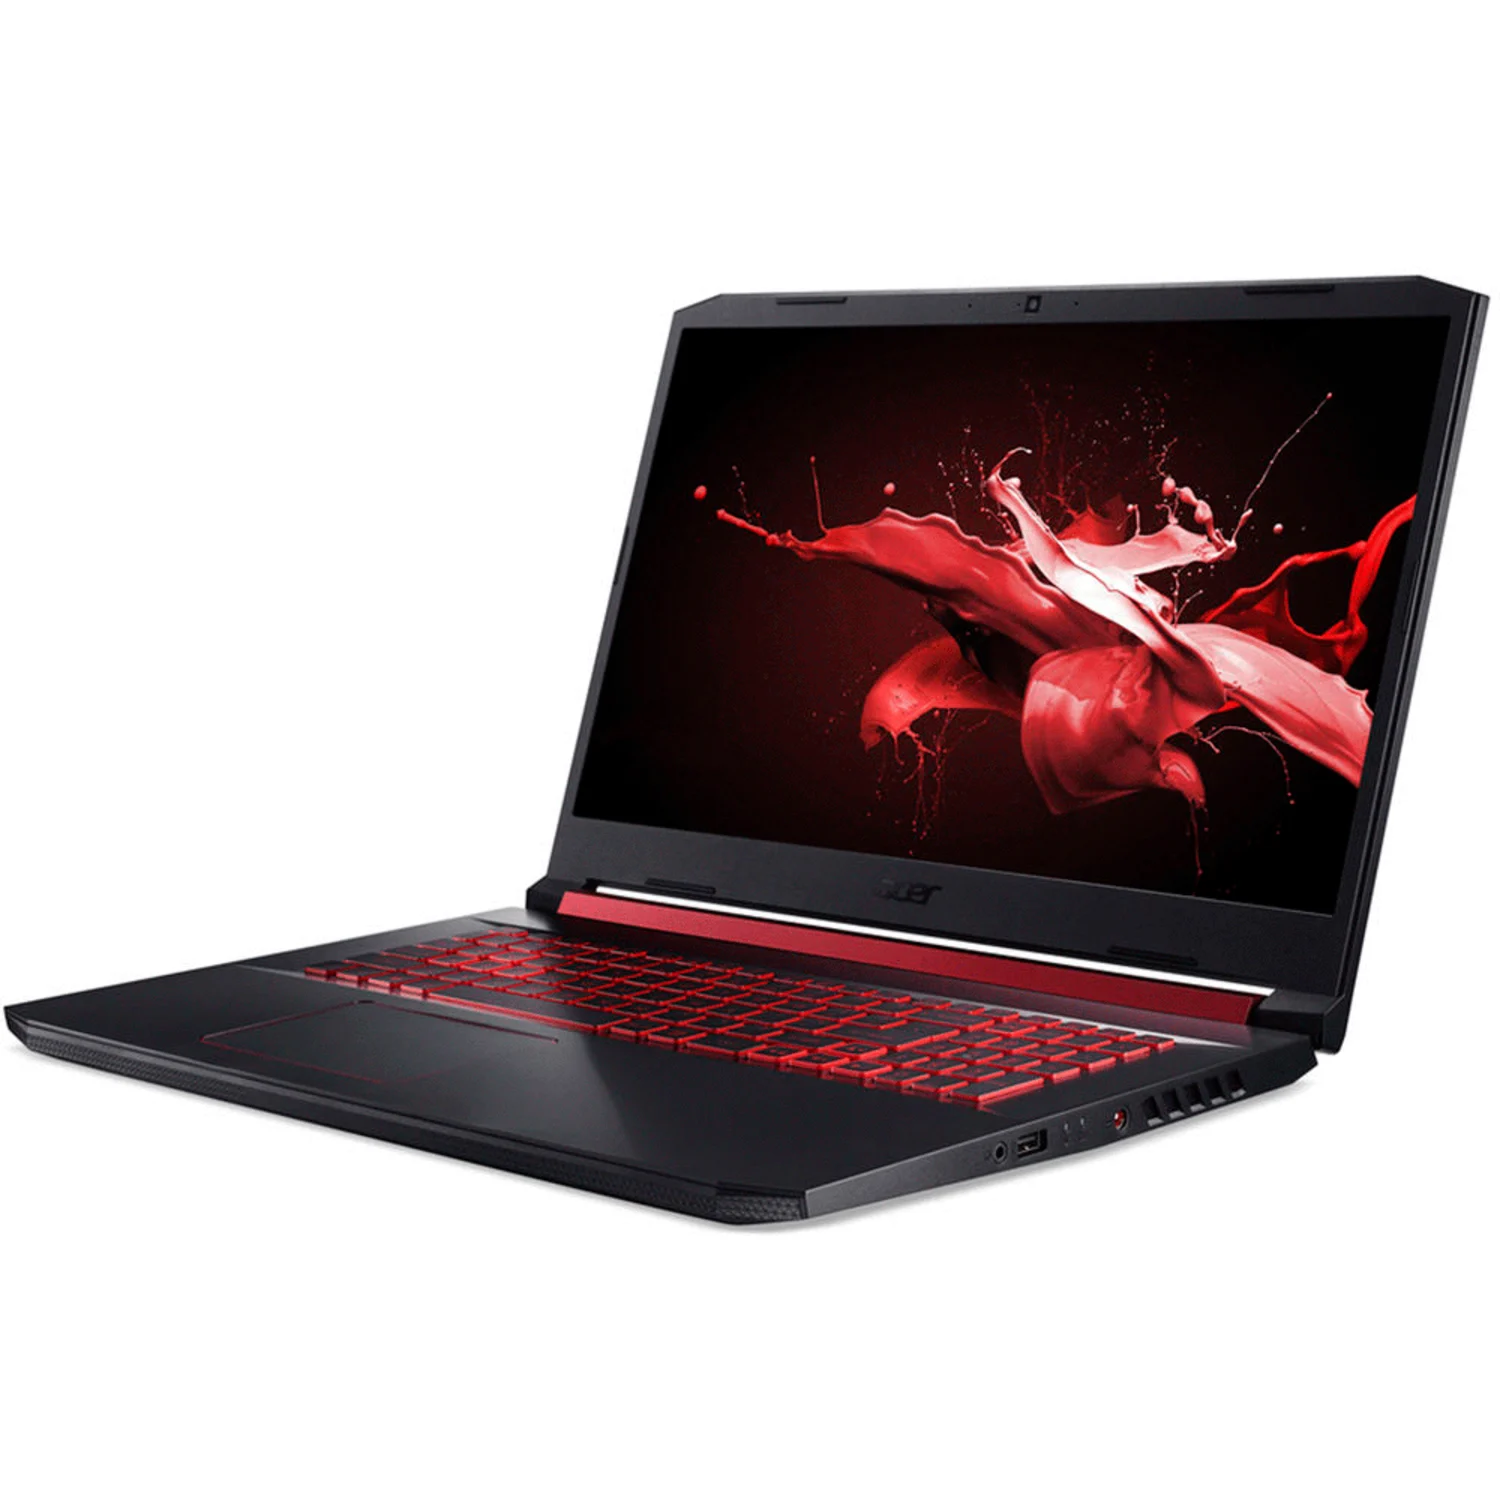 Notebook Acer Nitro 5 Intel Core i5 9300H / Tela 15.6" / Memória RAM 8GB / SSD 512GB / Placa de vídeo GeForce GTX 1650 4GB / Windows 10 - Preto e vermelho (AN515-54-599H)